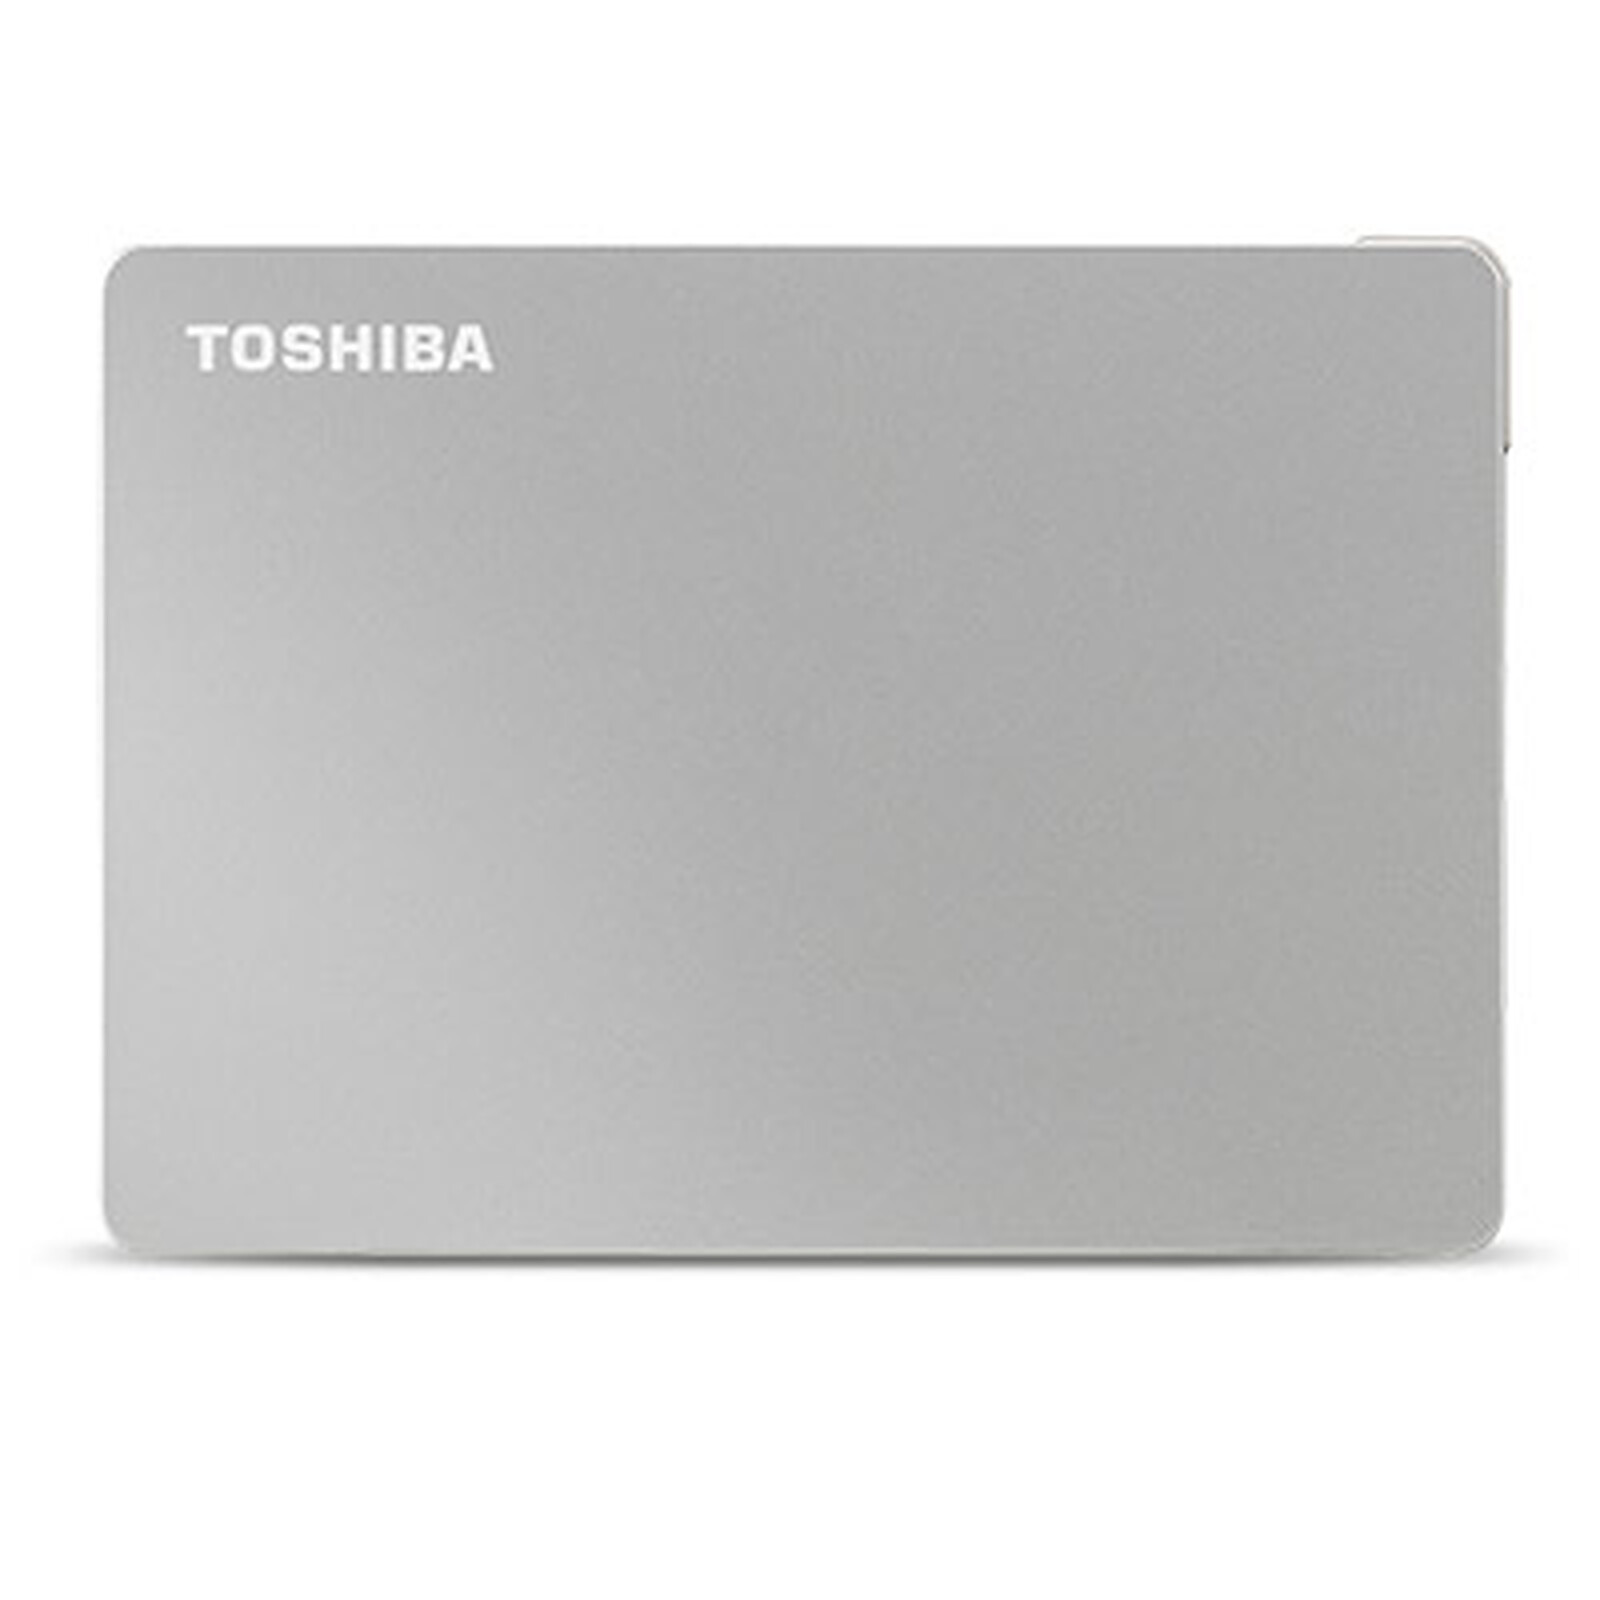 TOSHIBA Disque dur externe HDTX110ESCAA Canvio Flex 1To sur